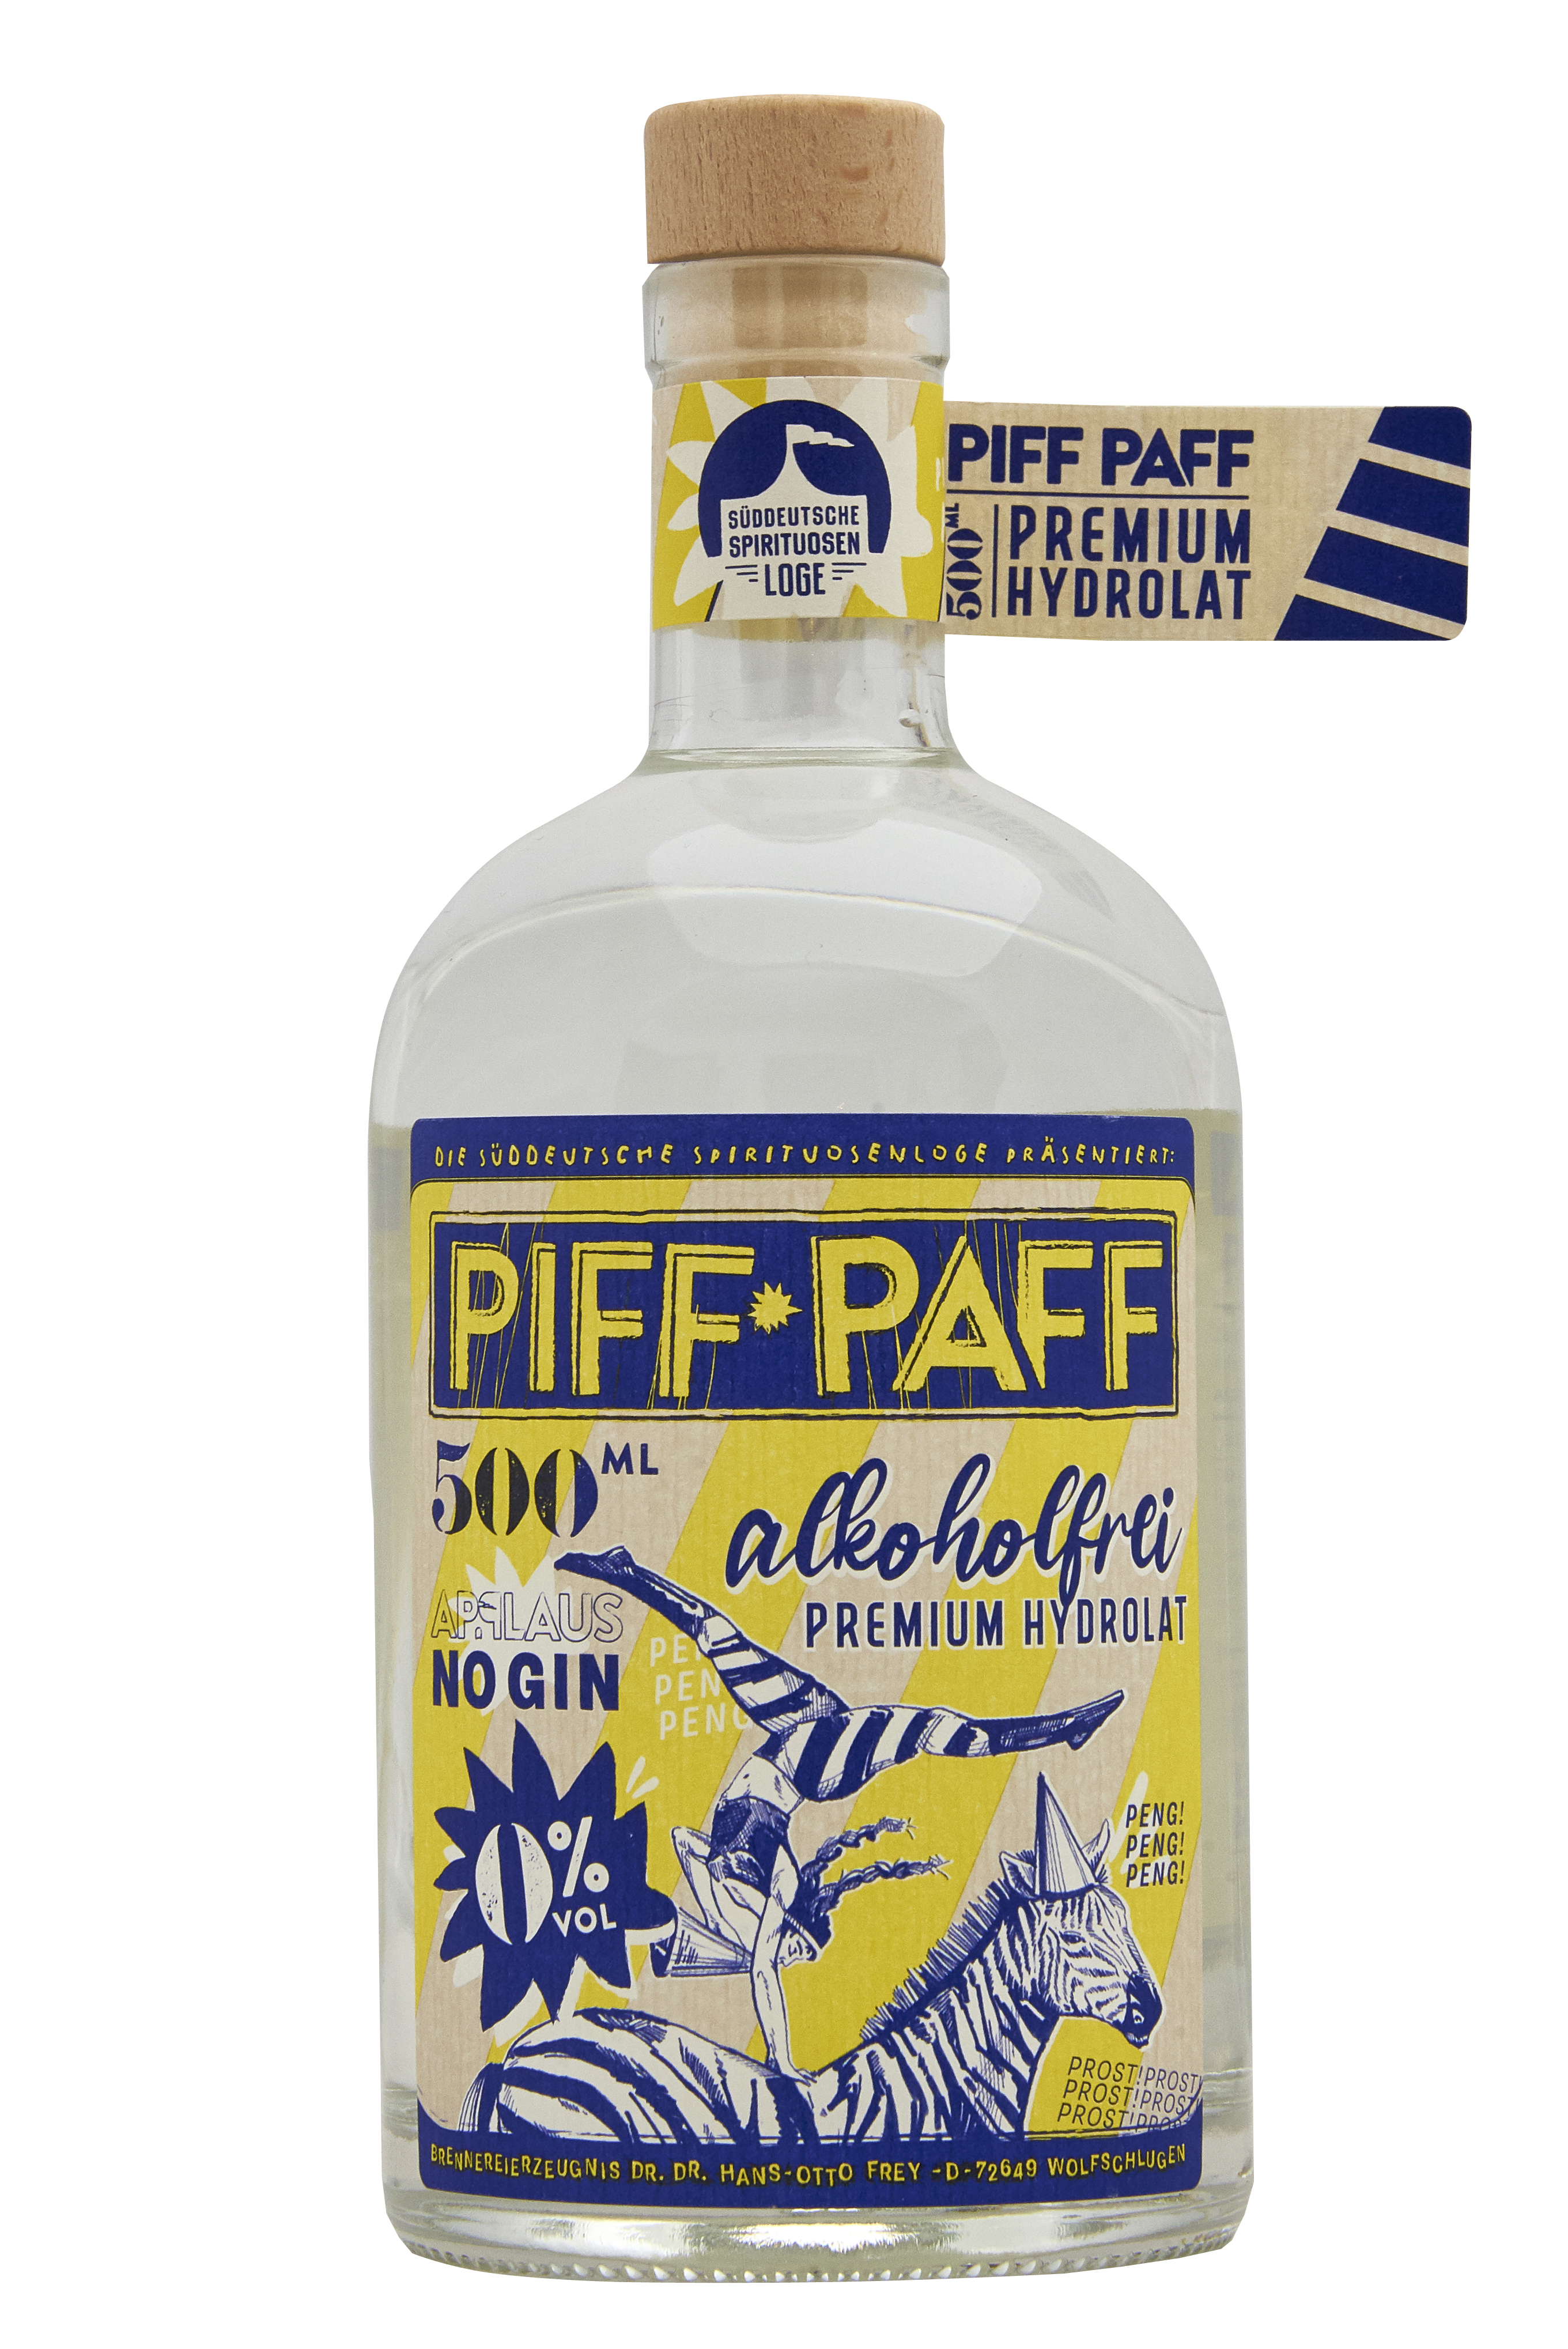 Applaus - Piff Paff - Premium Hydrolat 0,5l 0%vol.